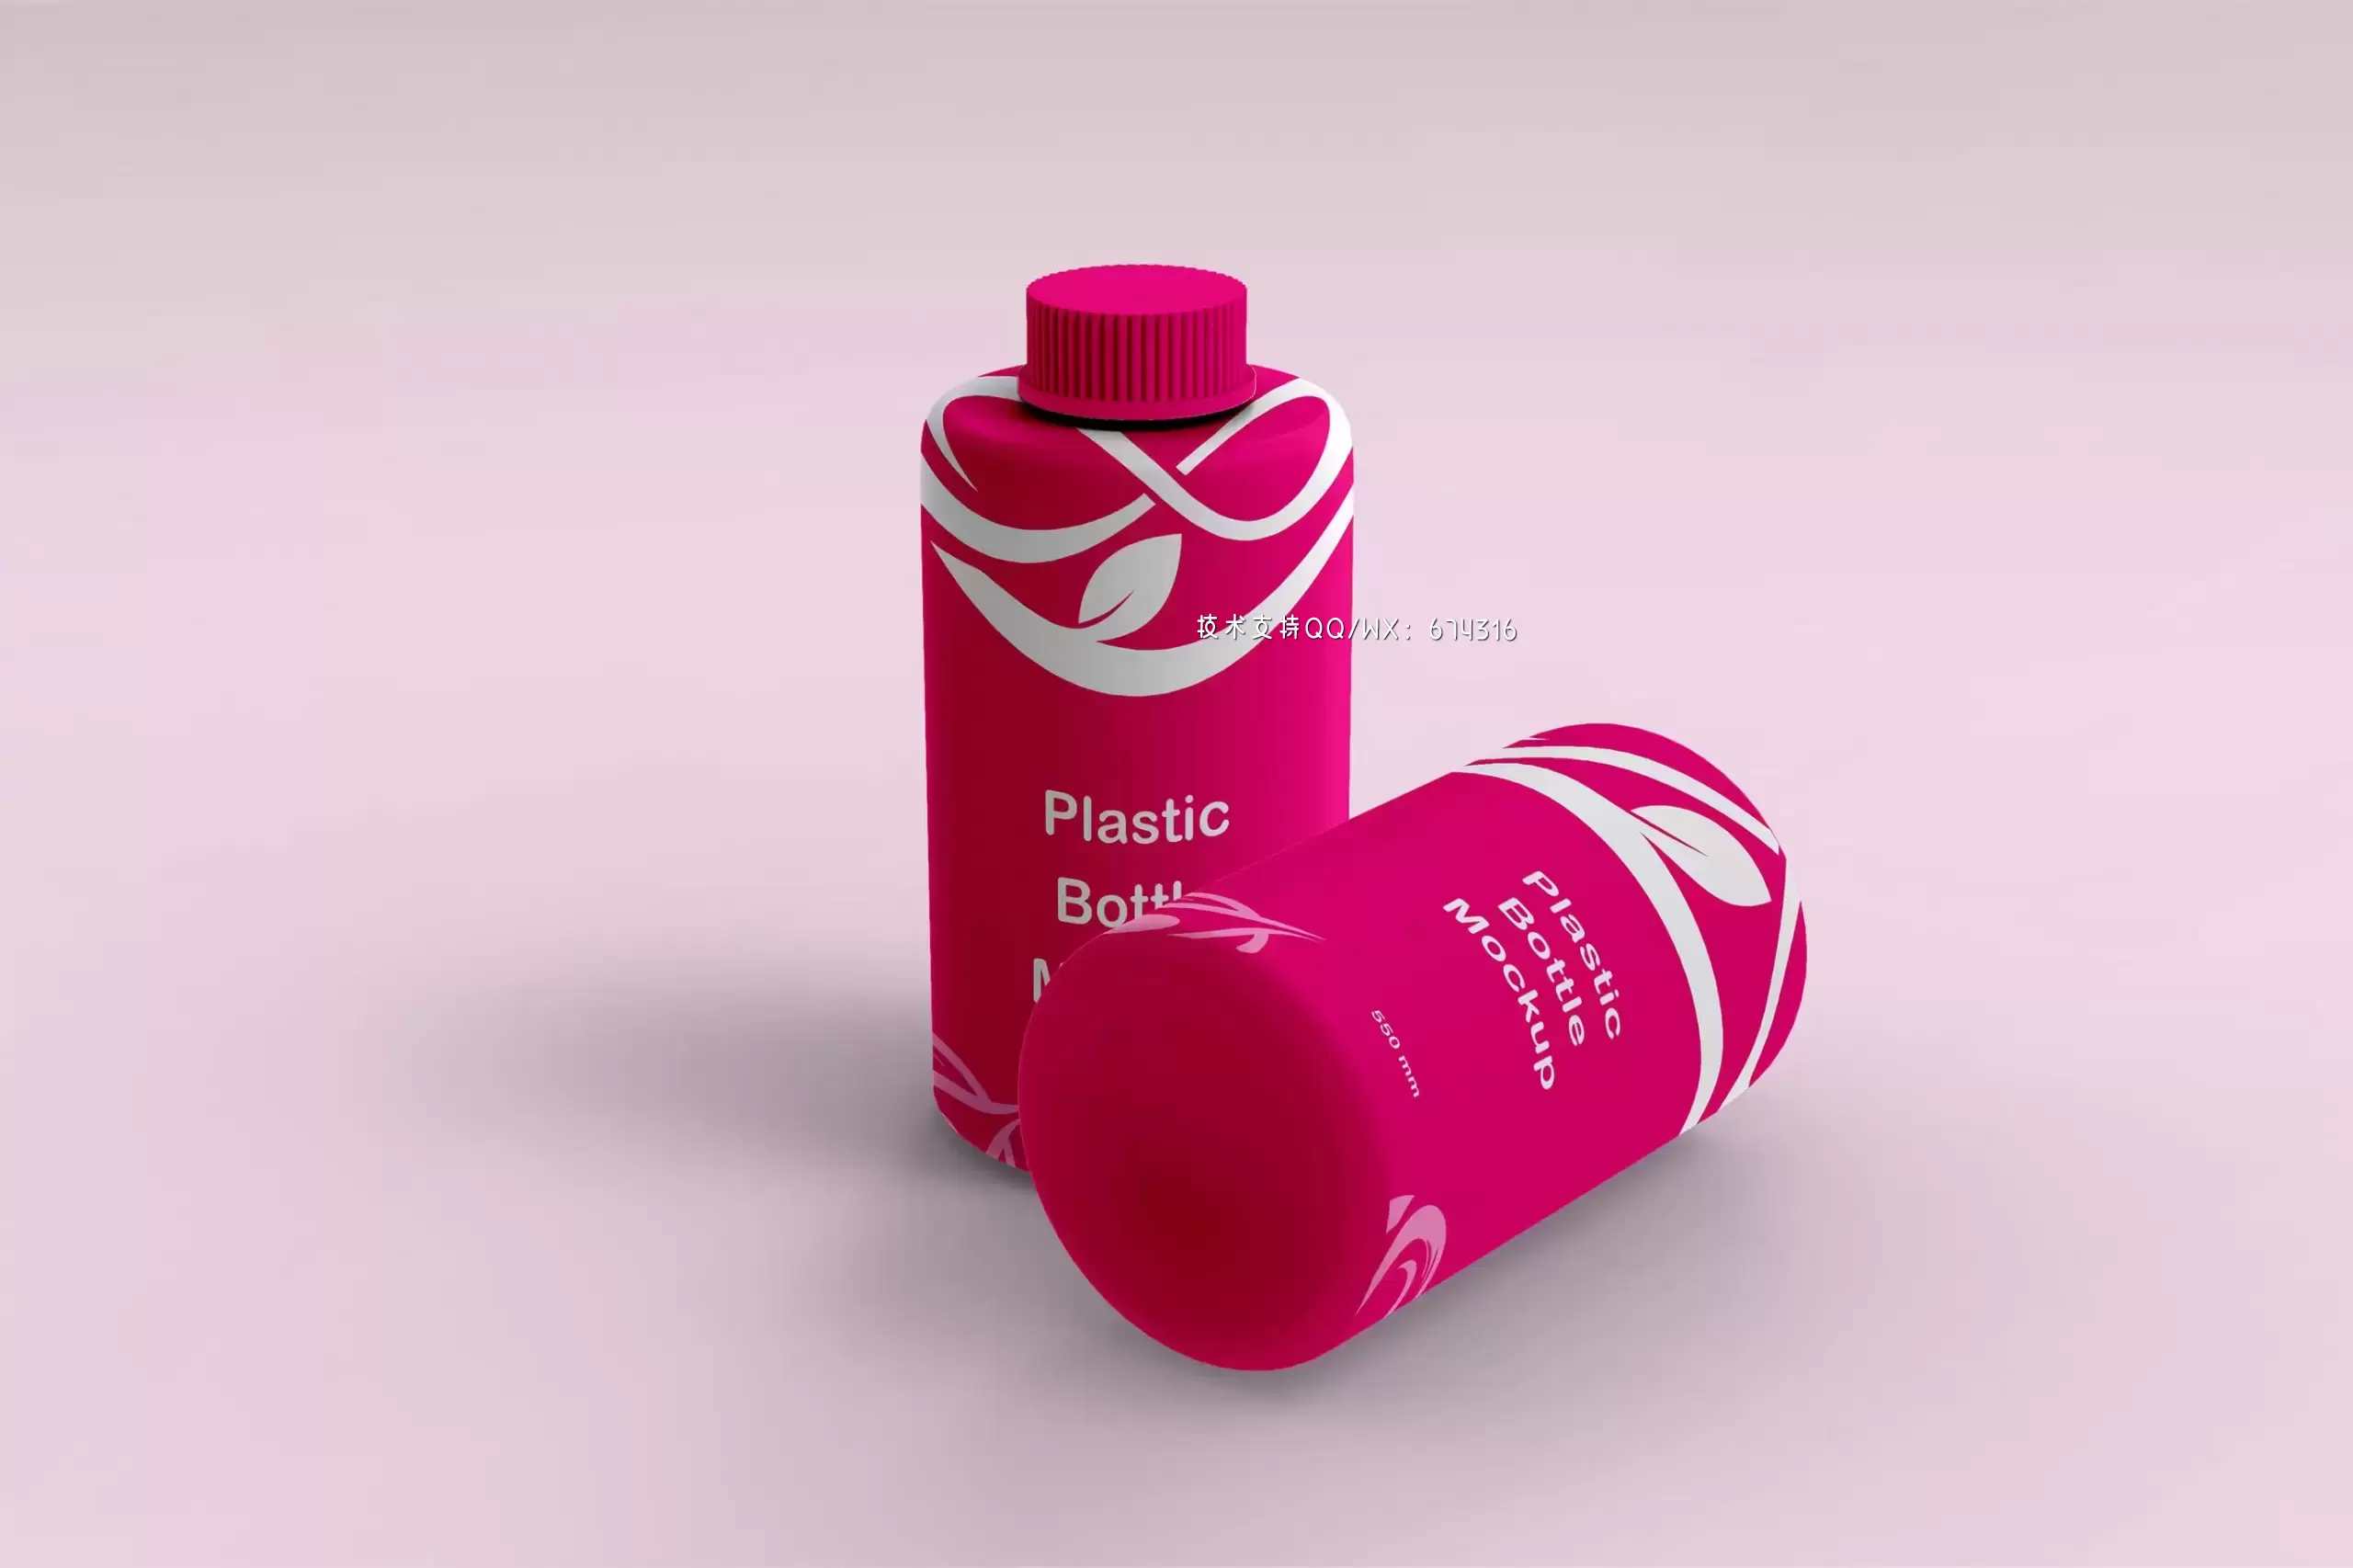 塑料药瓶样机 (PSD)免费下载